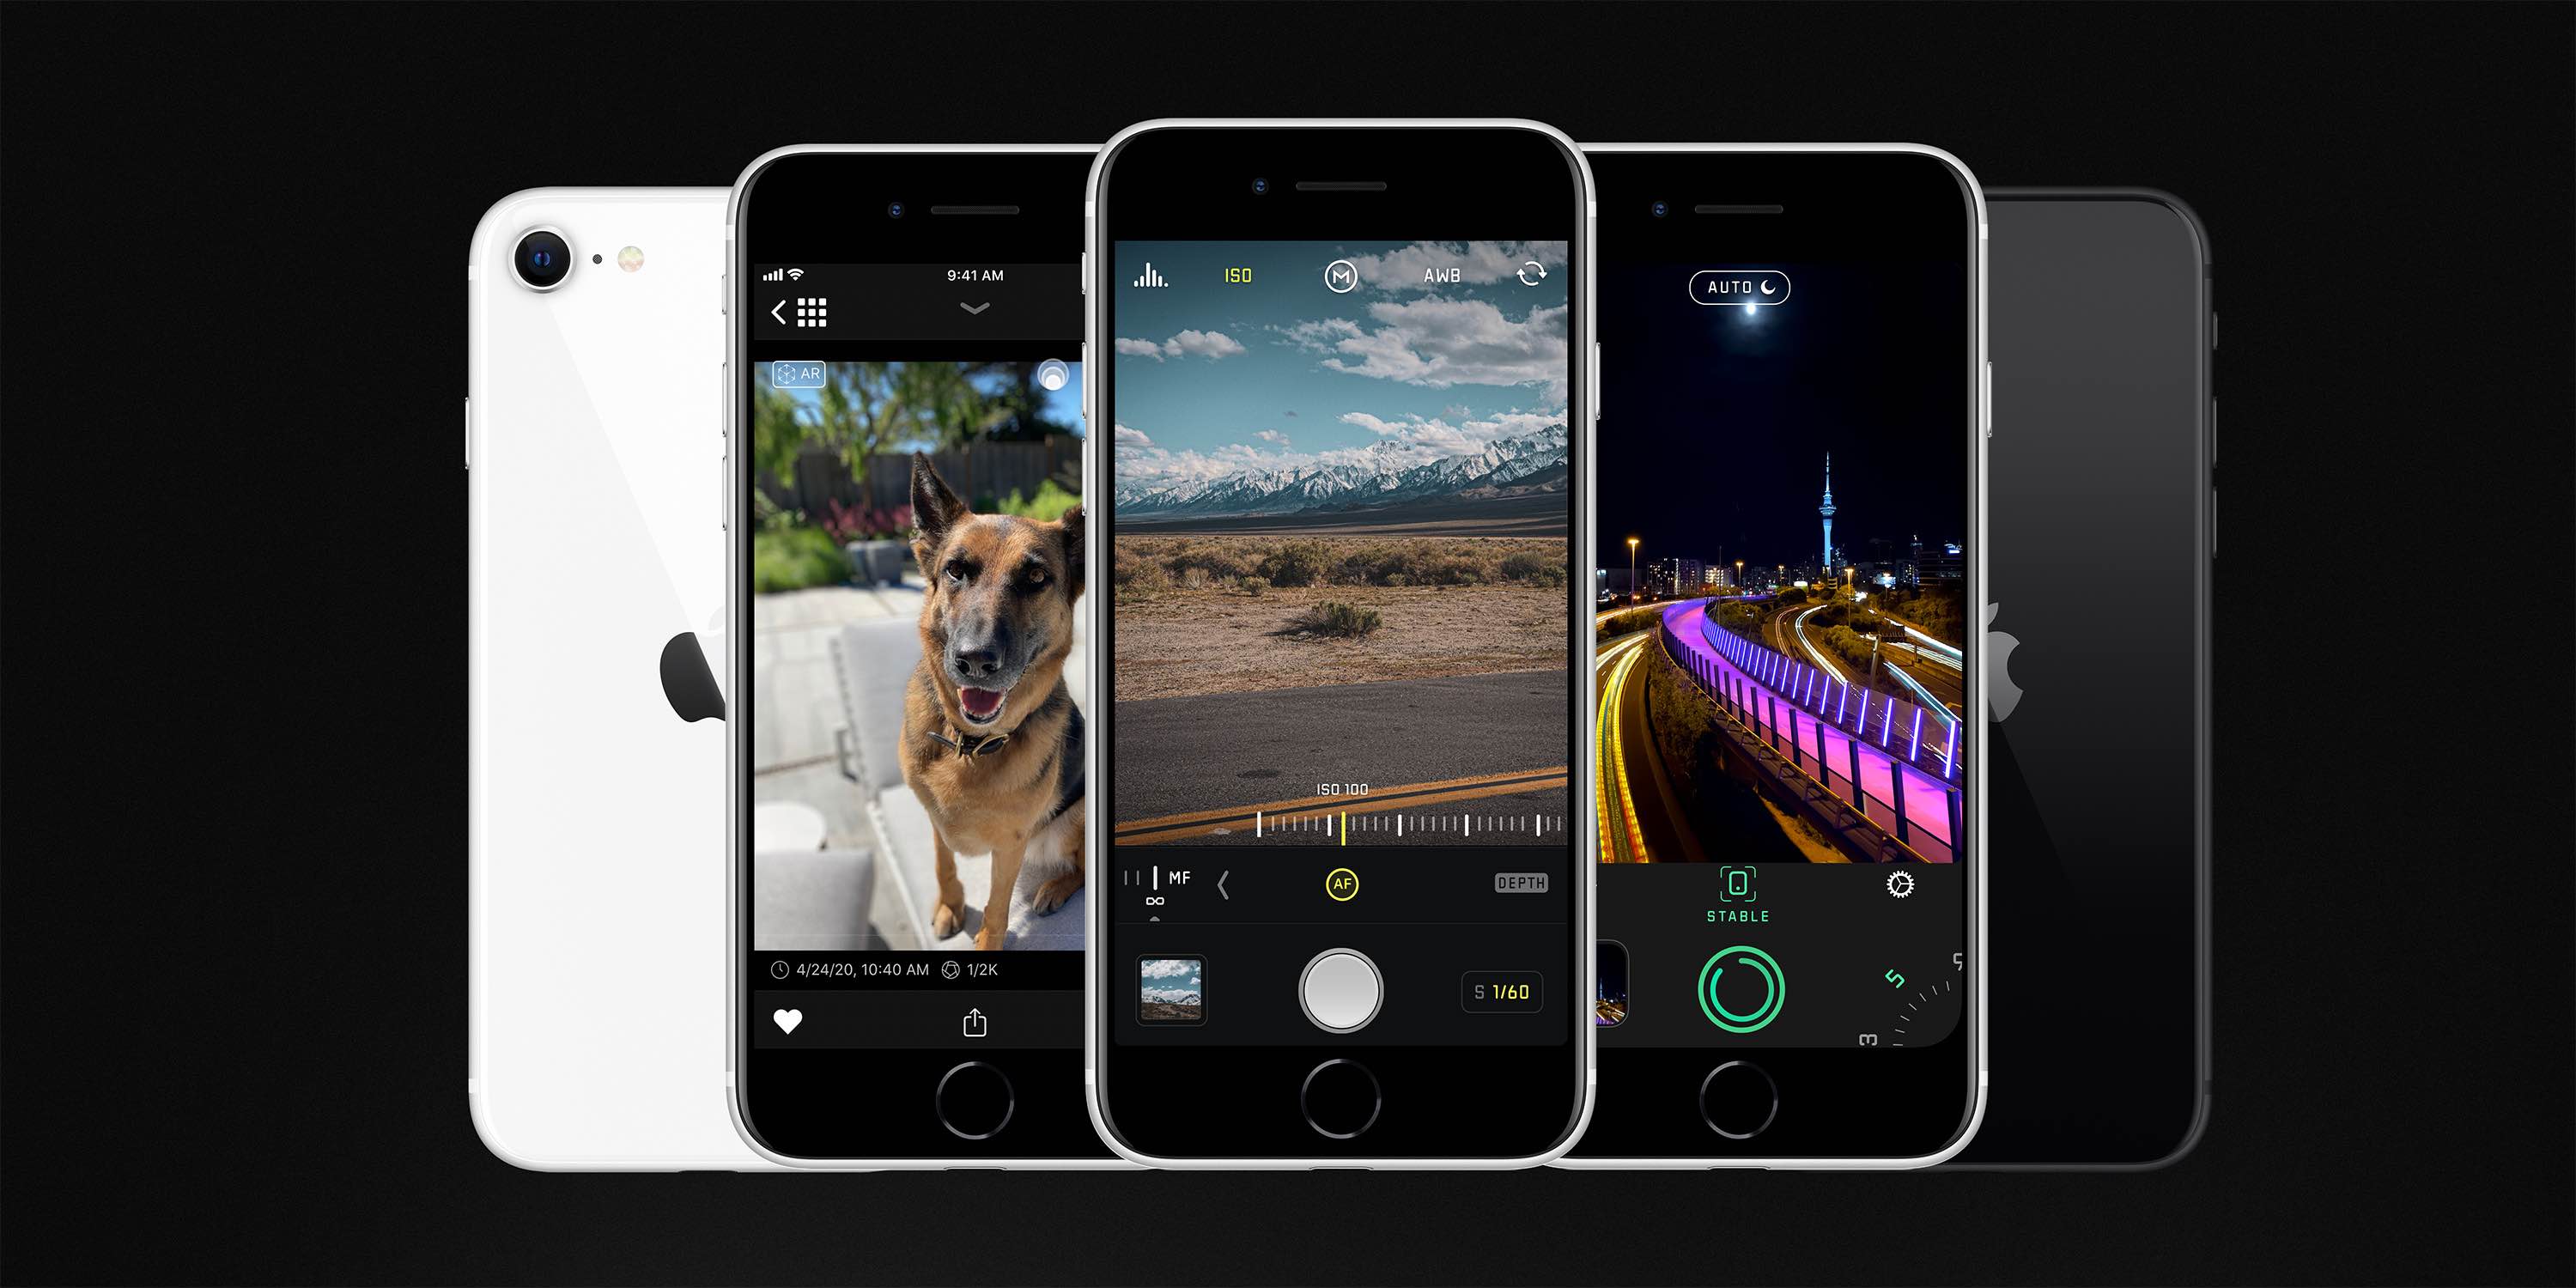 Обновления Halide и Spectre включают портретный режим iPhone SE для неодушевленных предметов и животных ... 11